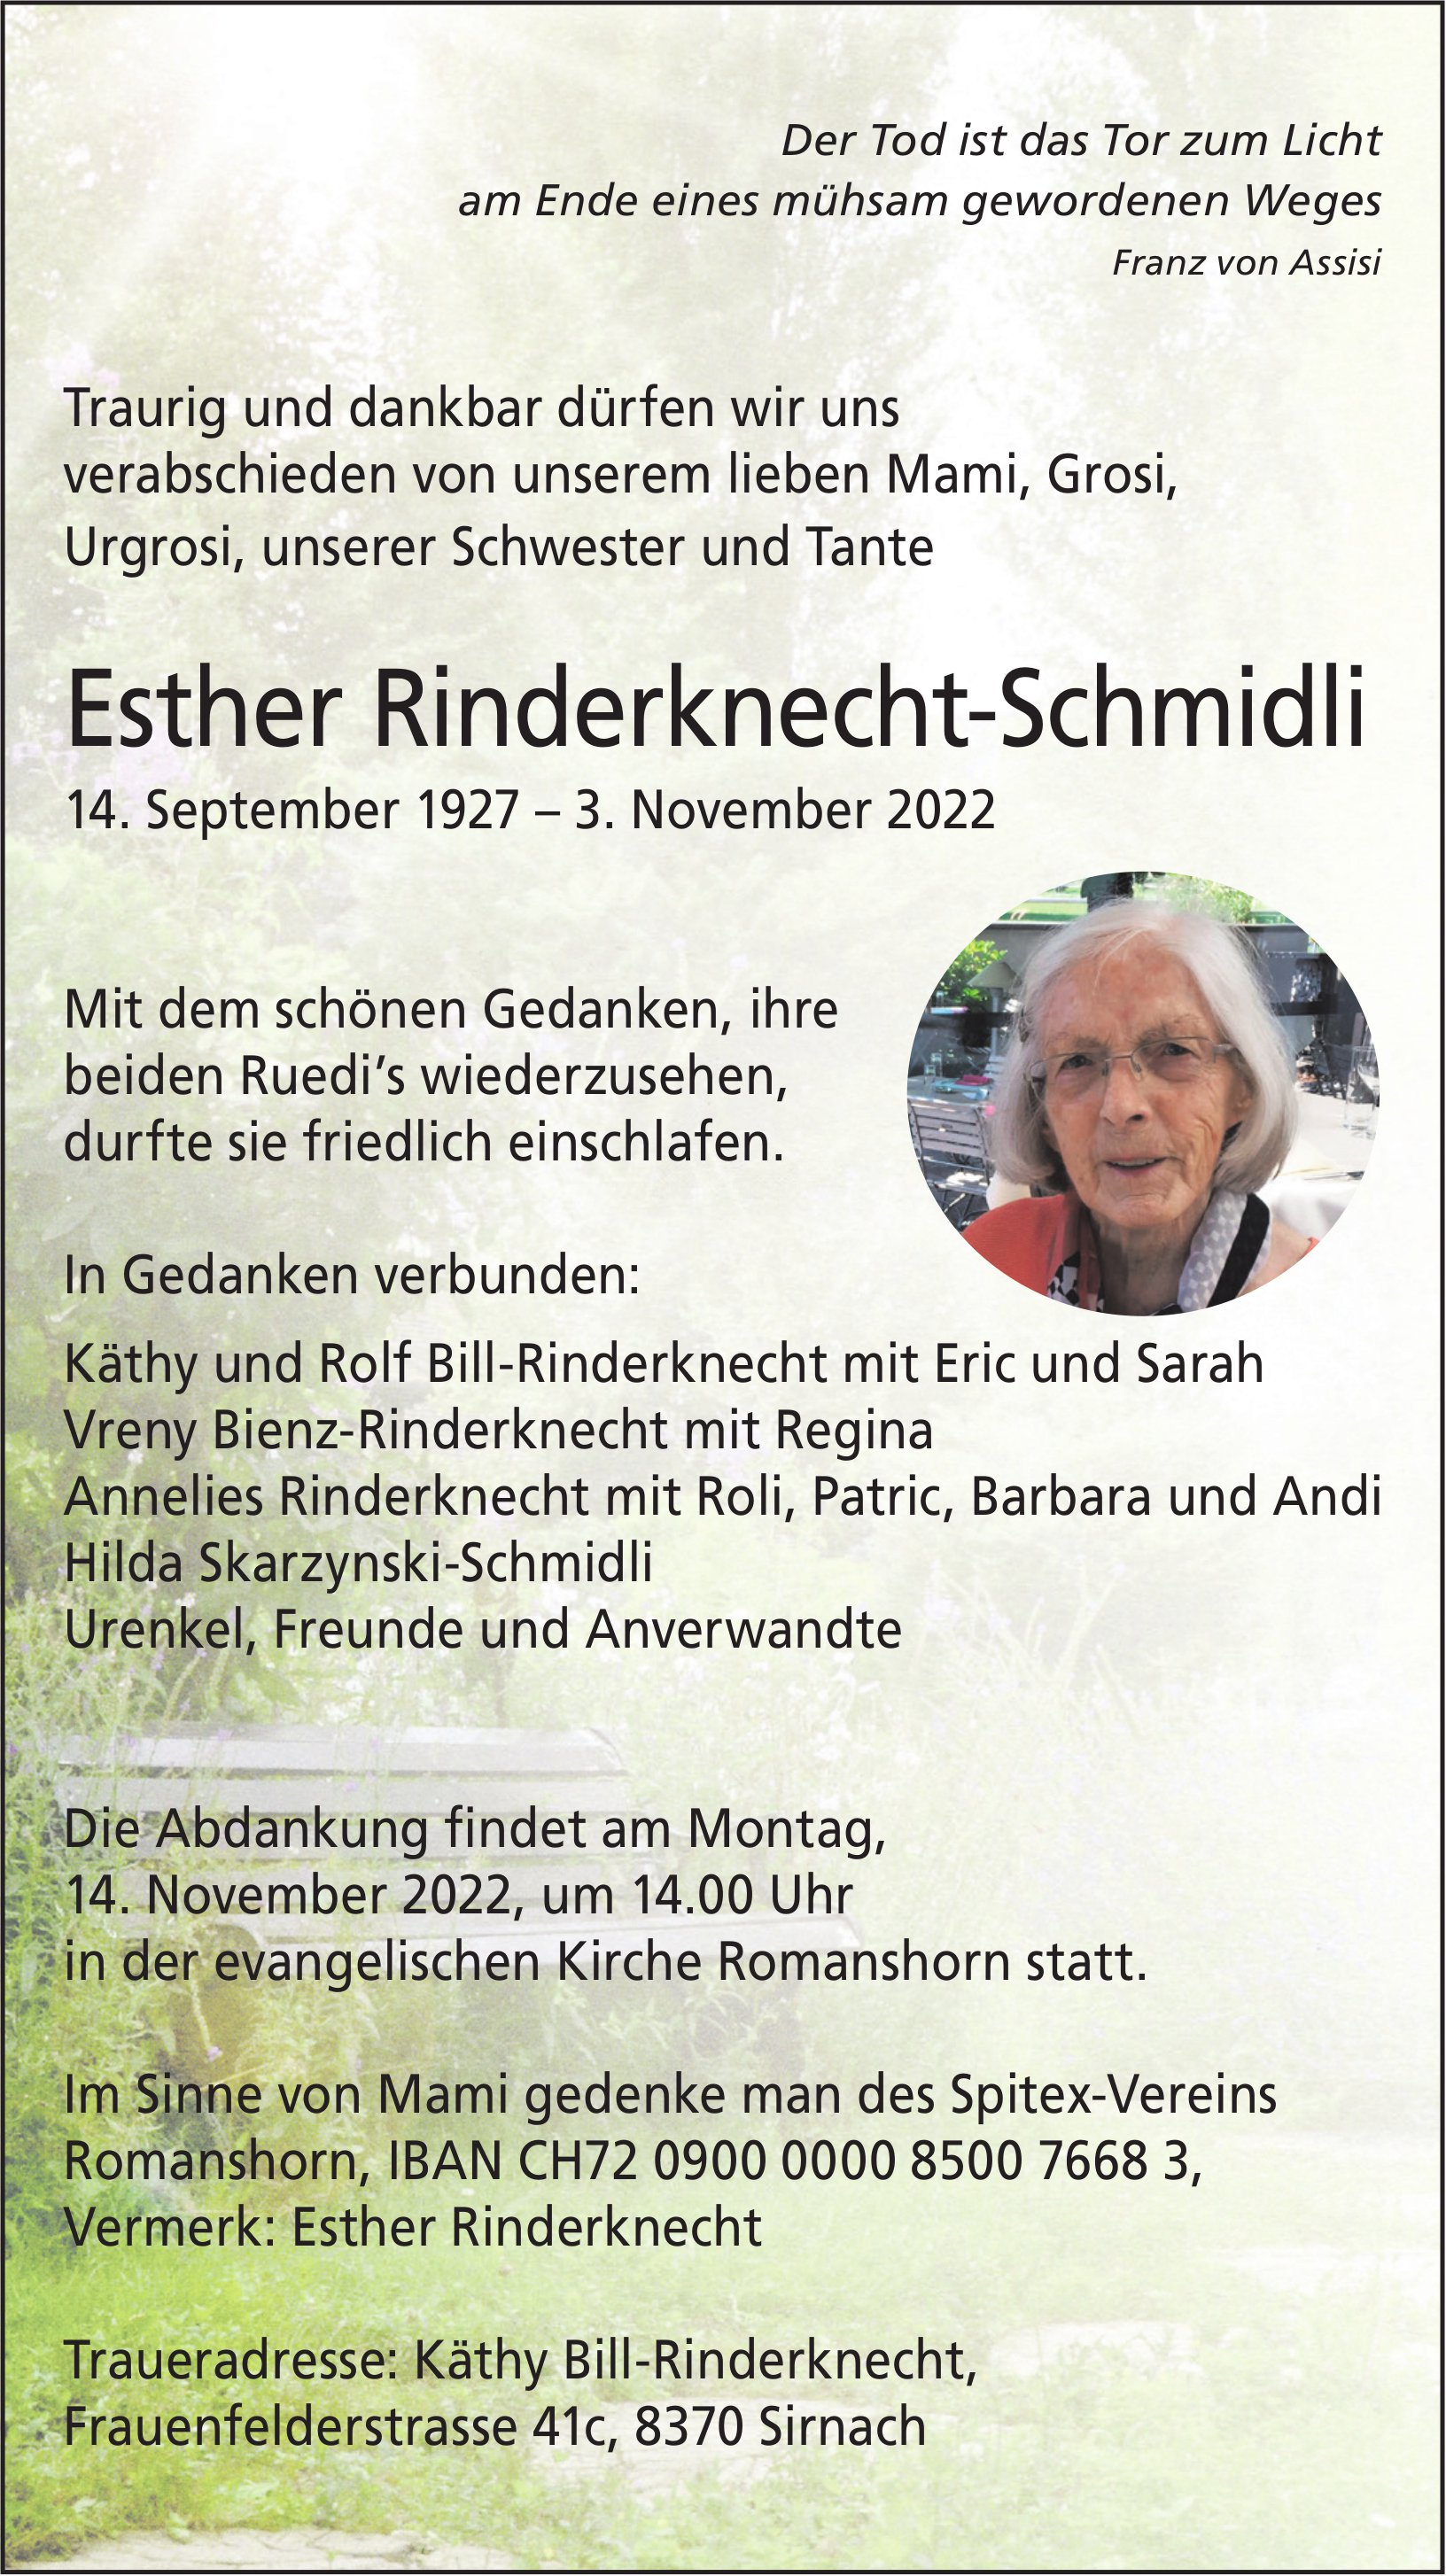 Rinderknecht-Schmidli Esther, November 2022 / TA